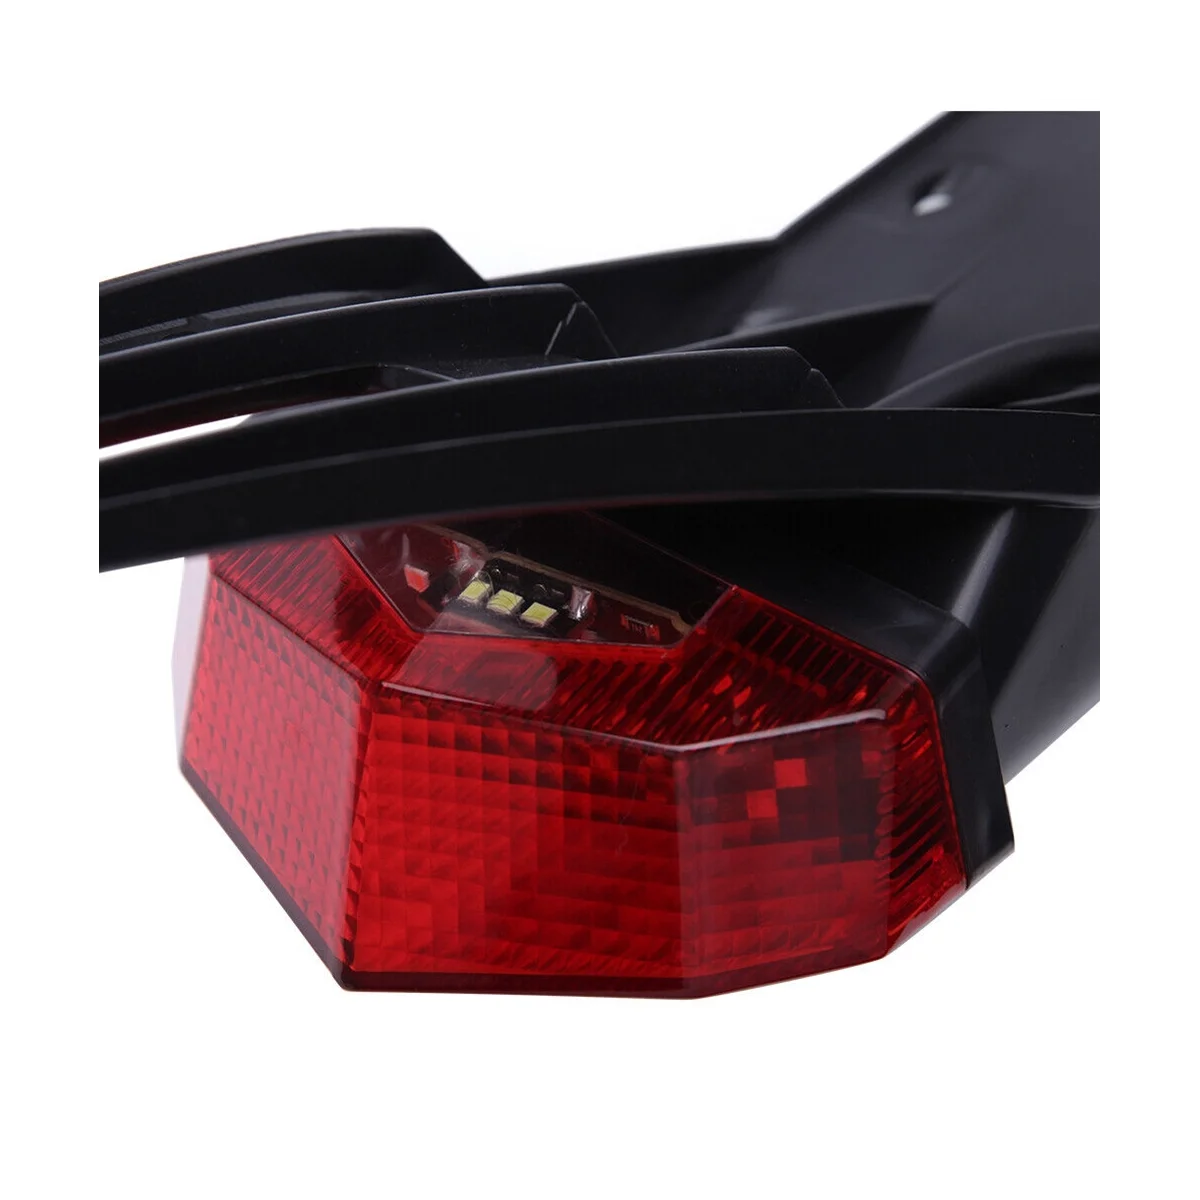 

Новый задний фонарь WD 12 В со светодиодной подсветкой, задний фонарь, задний фонарь для мотоциклов, обновленный номерной знак для внедорожников, задний фонарь серого цвета